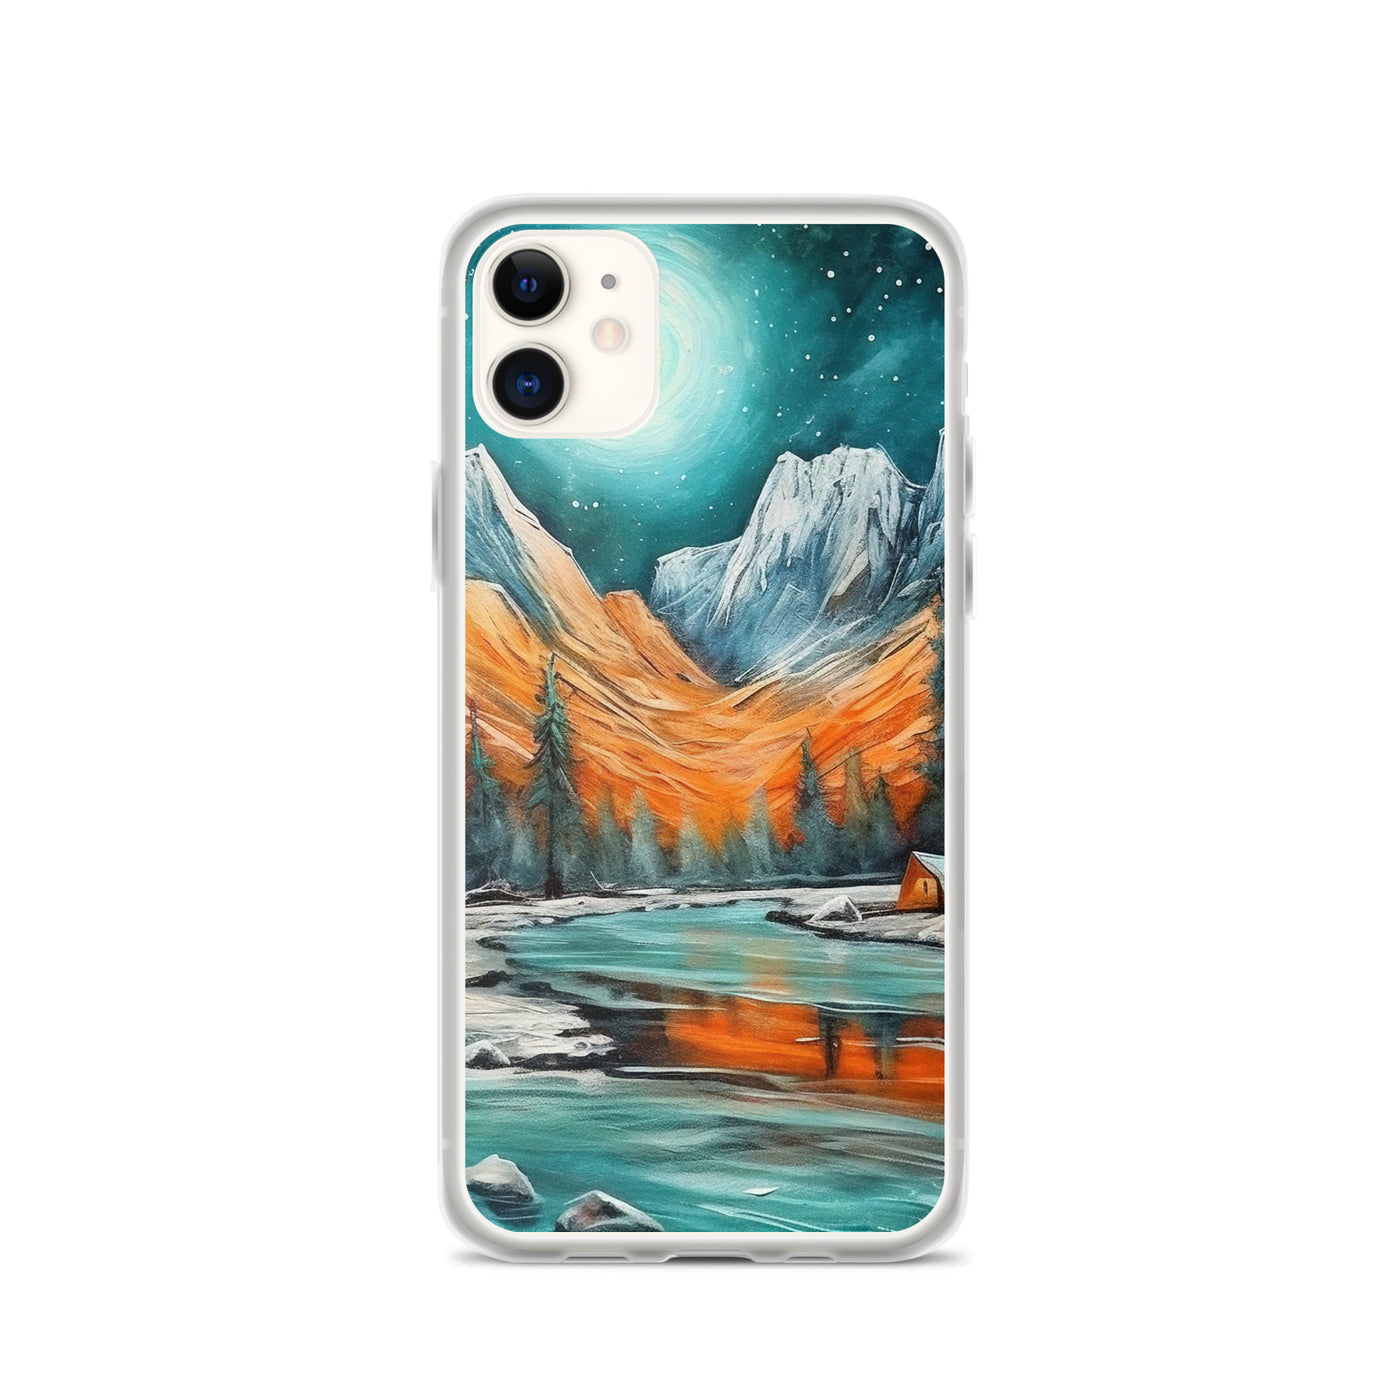 Berglandschaft und Zelte - Nachtstimmung - Landschaftsmalerei - iPhone Schutzhülle (durchsichtig) camping xxx iPhone 11